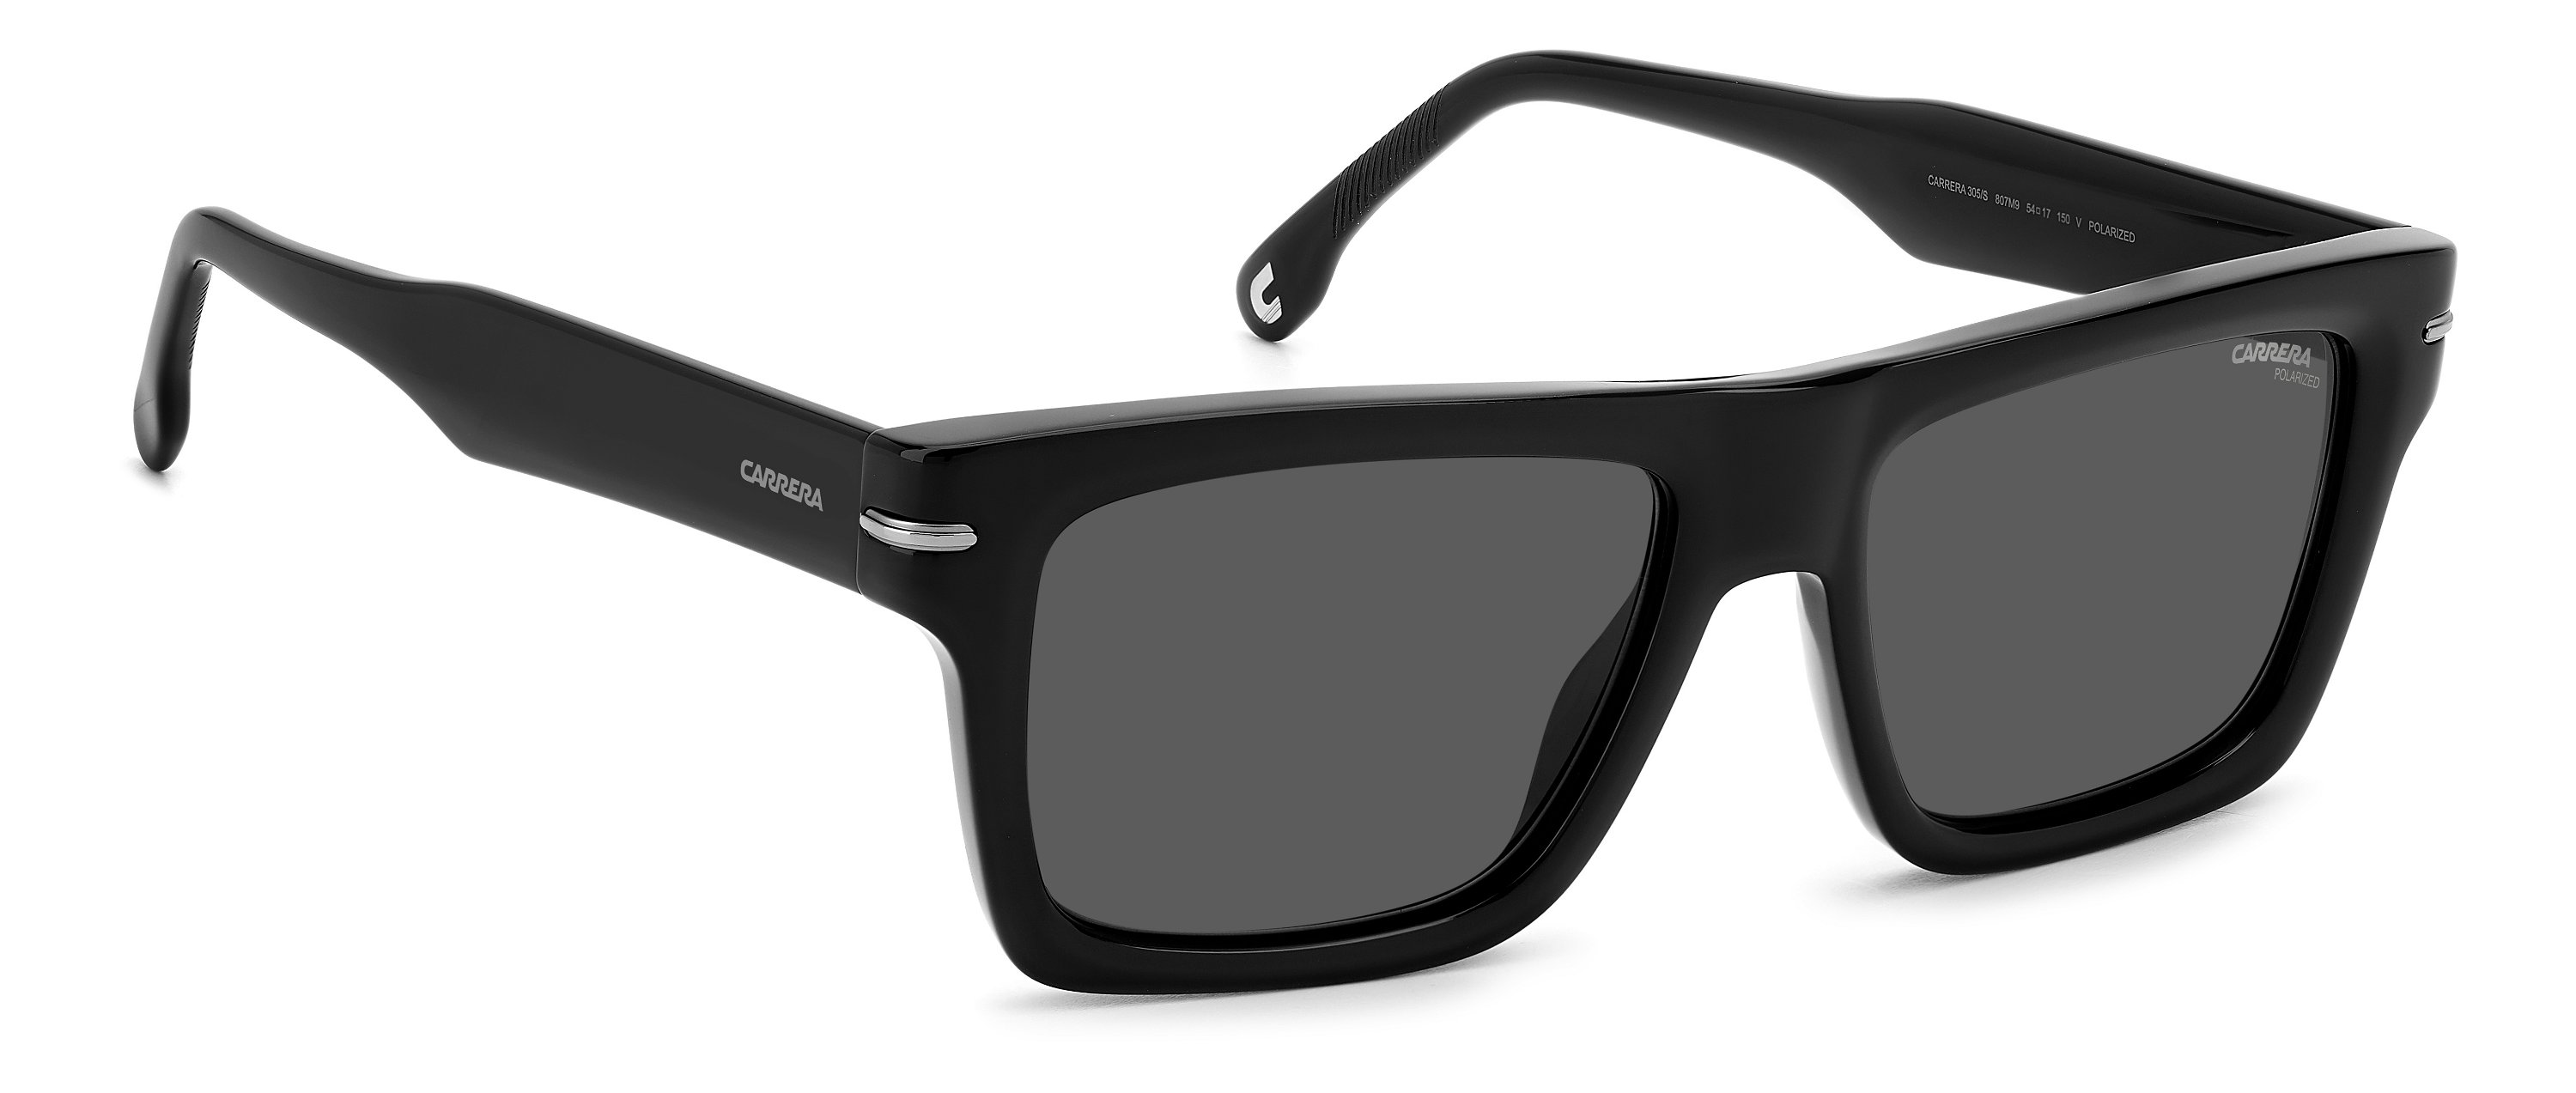 Carrera Sonnenbrille 305/S 807 schwarz